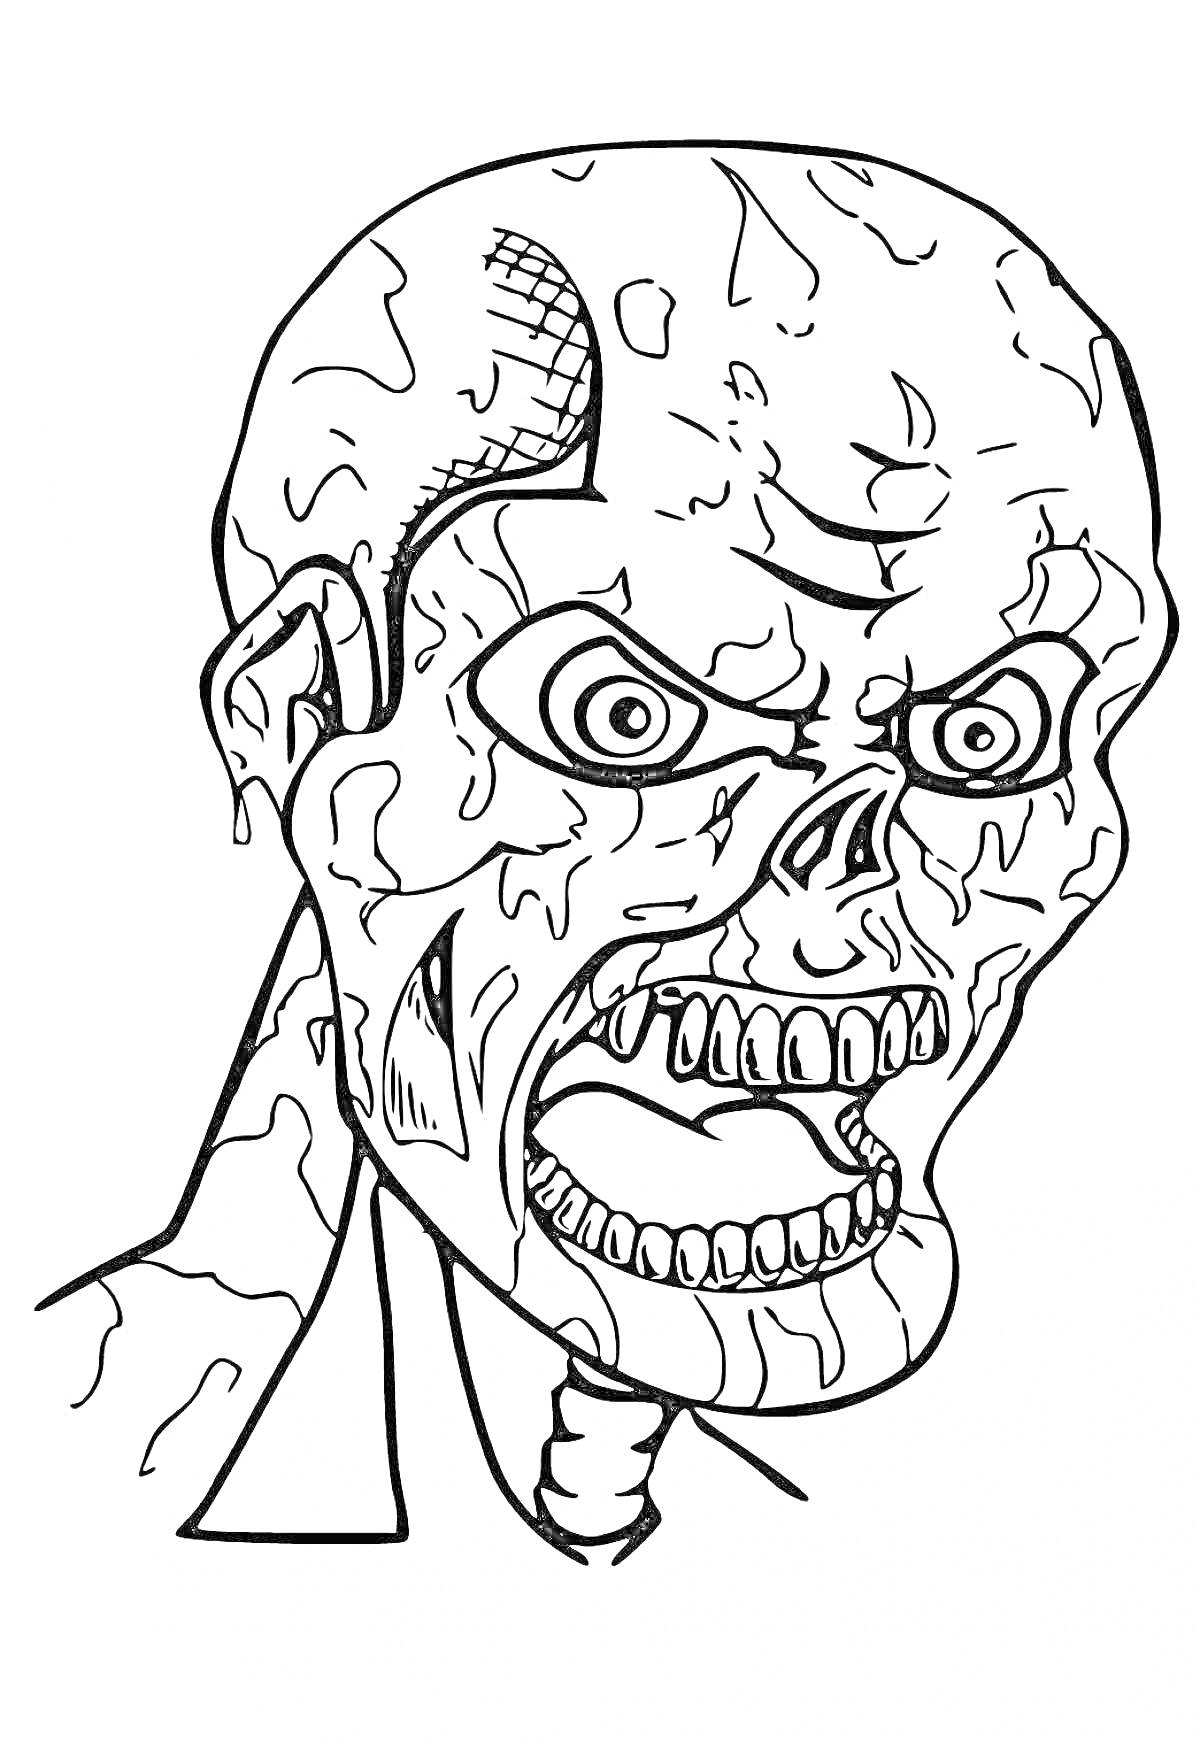 Раскраска Зомби с повреждённой кожей и эмоцией гнева